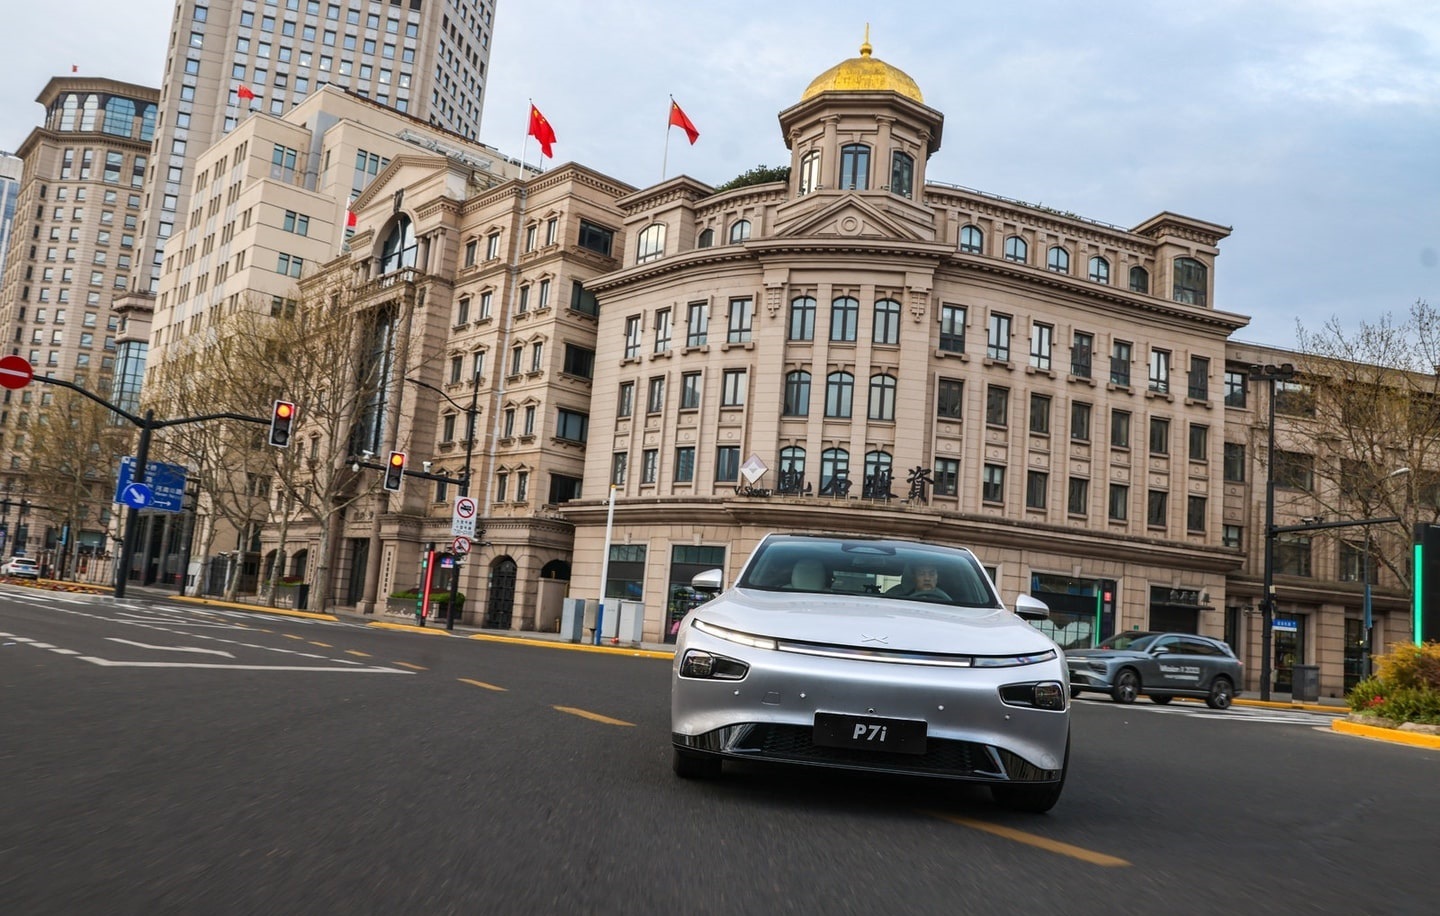 اکس پنگ پی7آی؛ خودروی چینی الکتریکی با فناوری رانندگی خودران (+عکس)